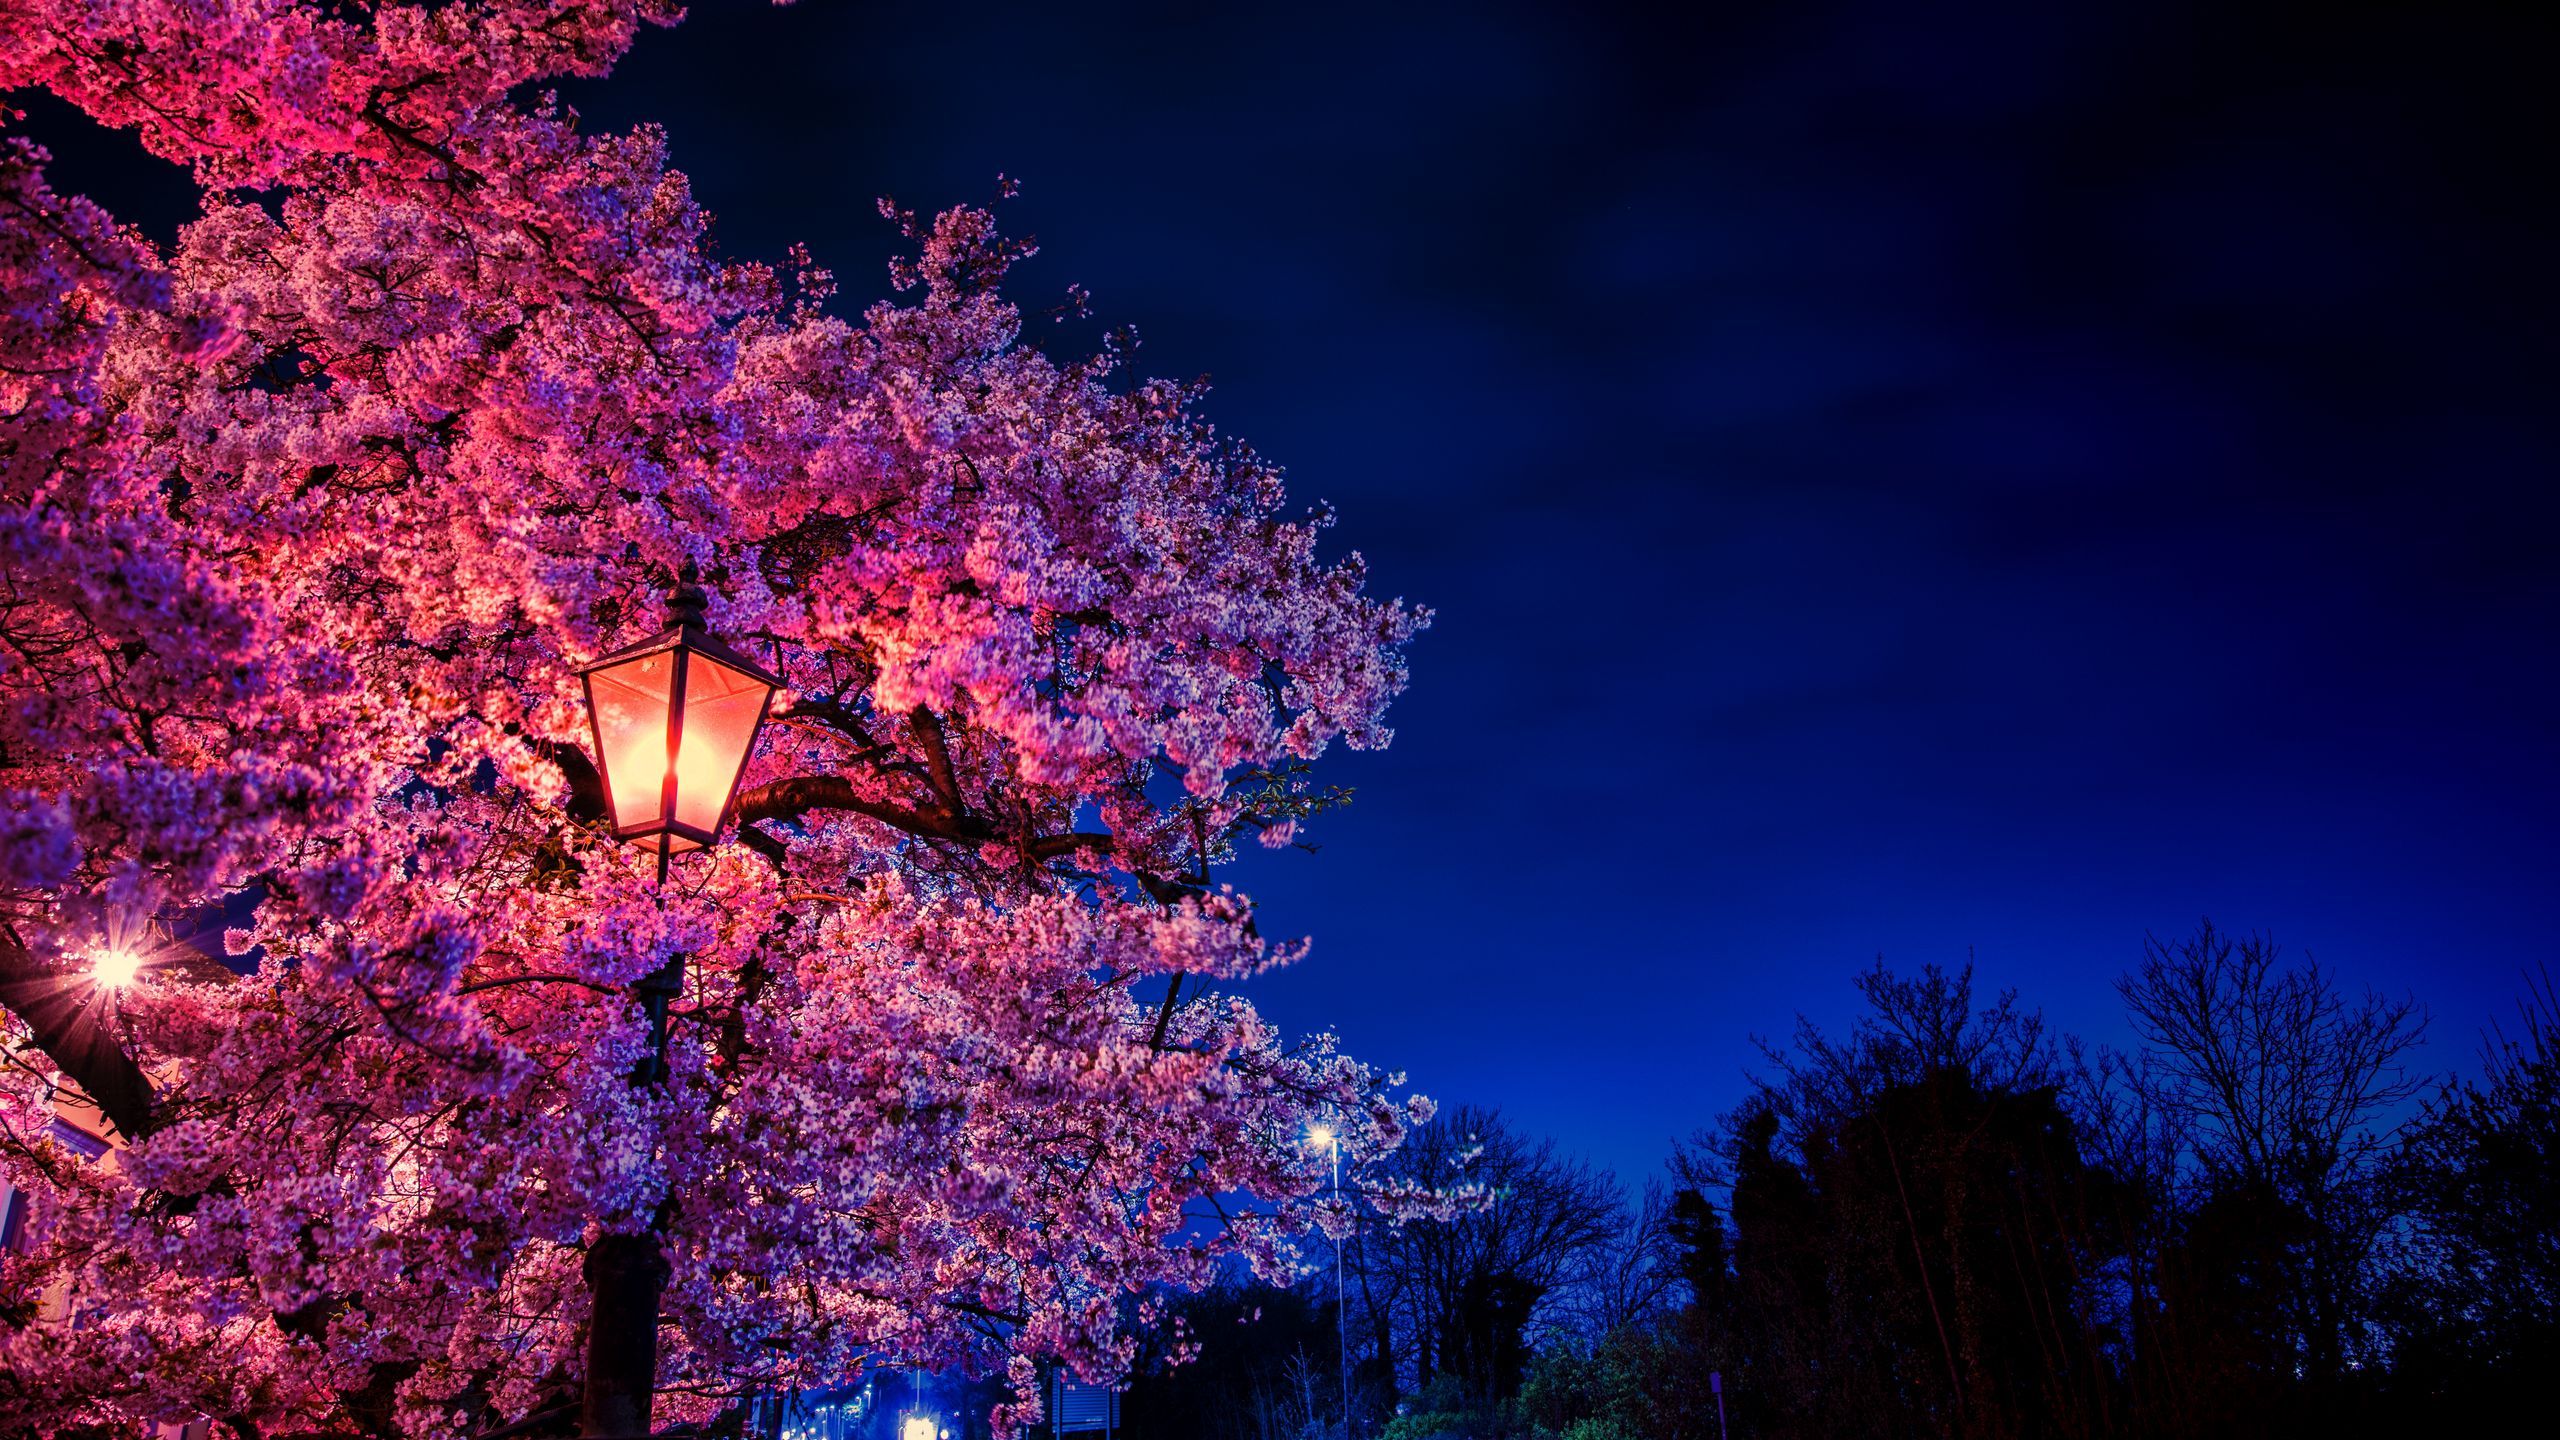 Download wallpaper 2560x1440 sakura, flowers, lantern, blooms